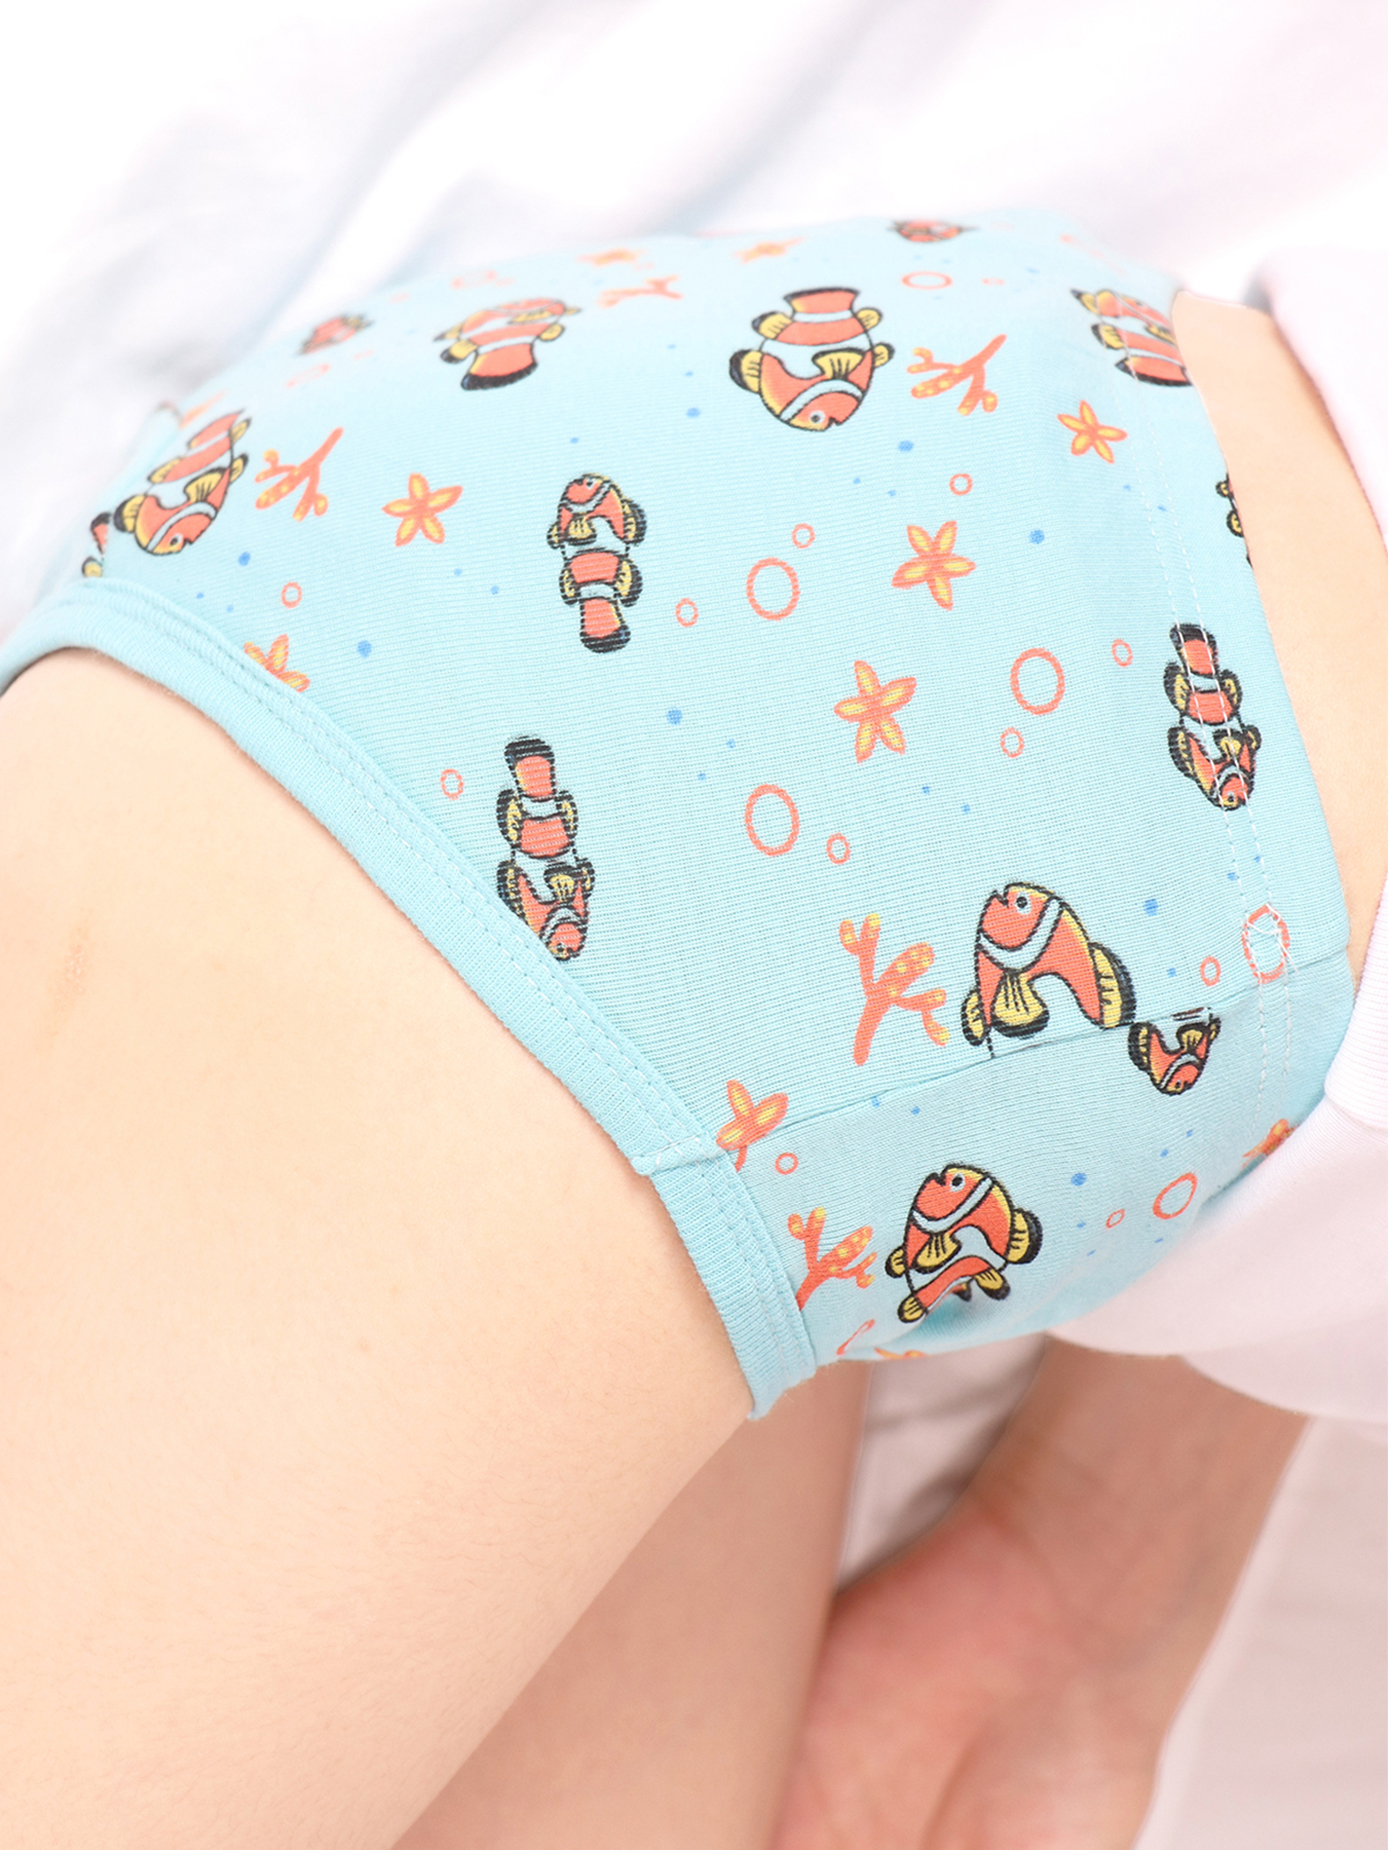 Children's Baby Girls' Underwear Cartoon Polka Dot Print Underwear Cotton  Briefs Trunks 4 Pieces Children's Briefs Girls (Green-D, 7-8 Years)